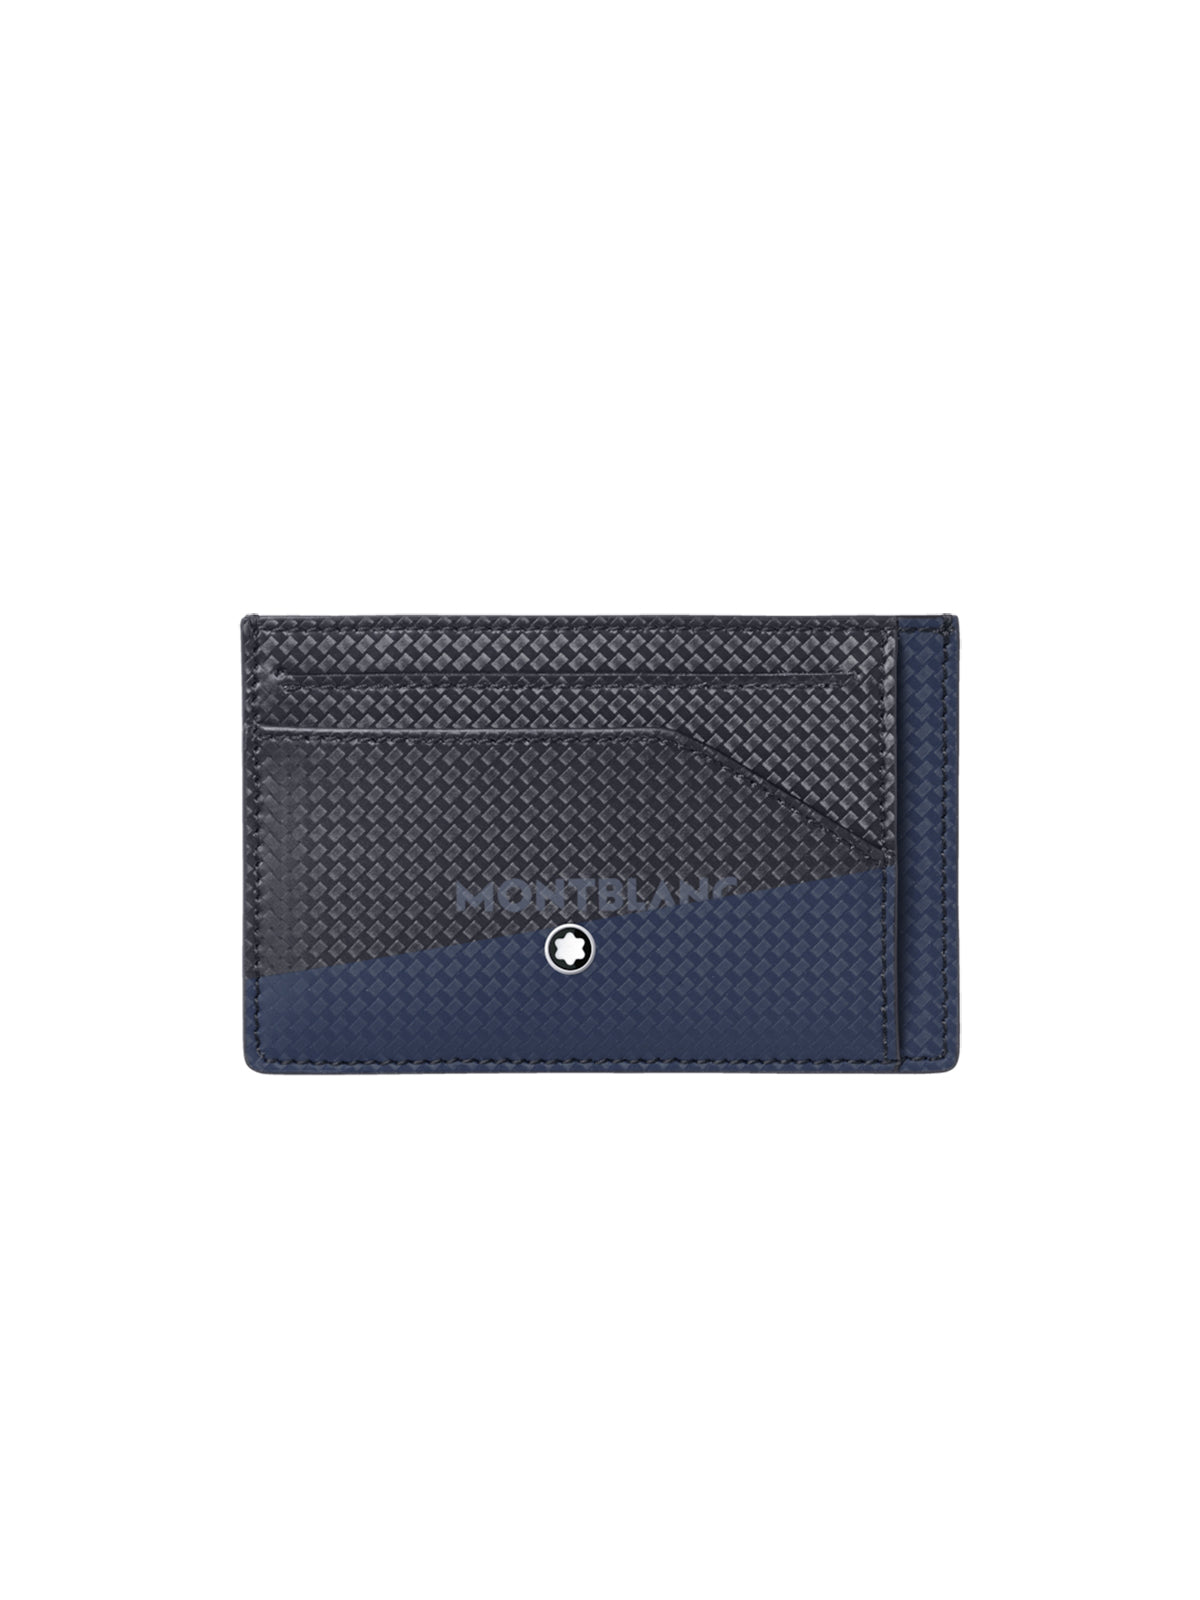 Montblanc Extreme 2.0 Blue & Black Pocket Holder MB128616